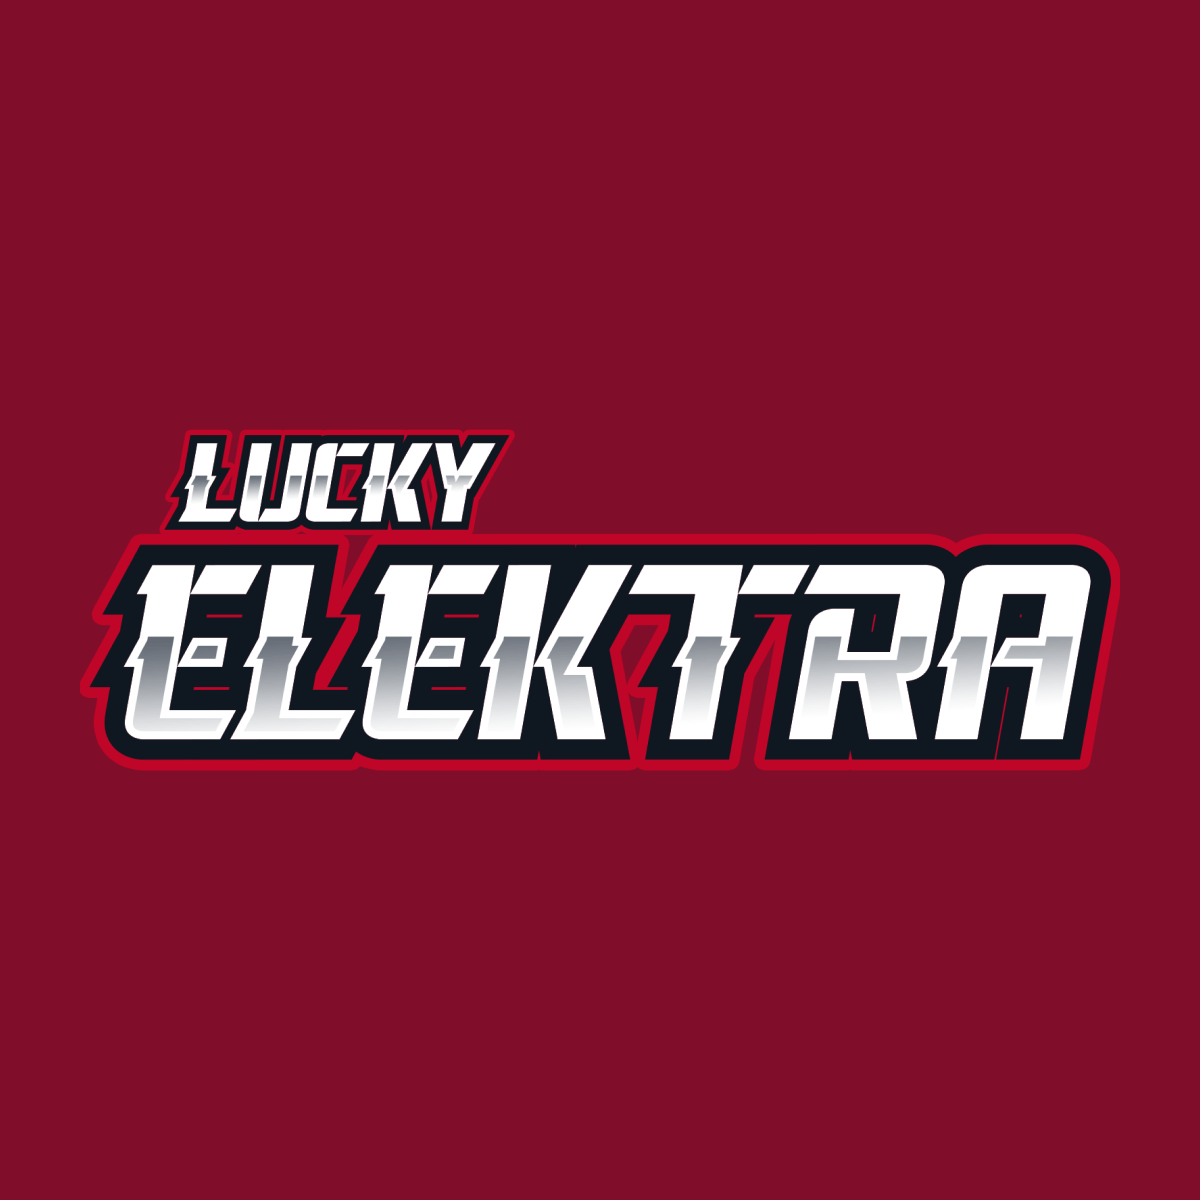 Lucky Elektra Casino arvostelu – pelejä aivan joka lähtöön